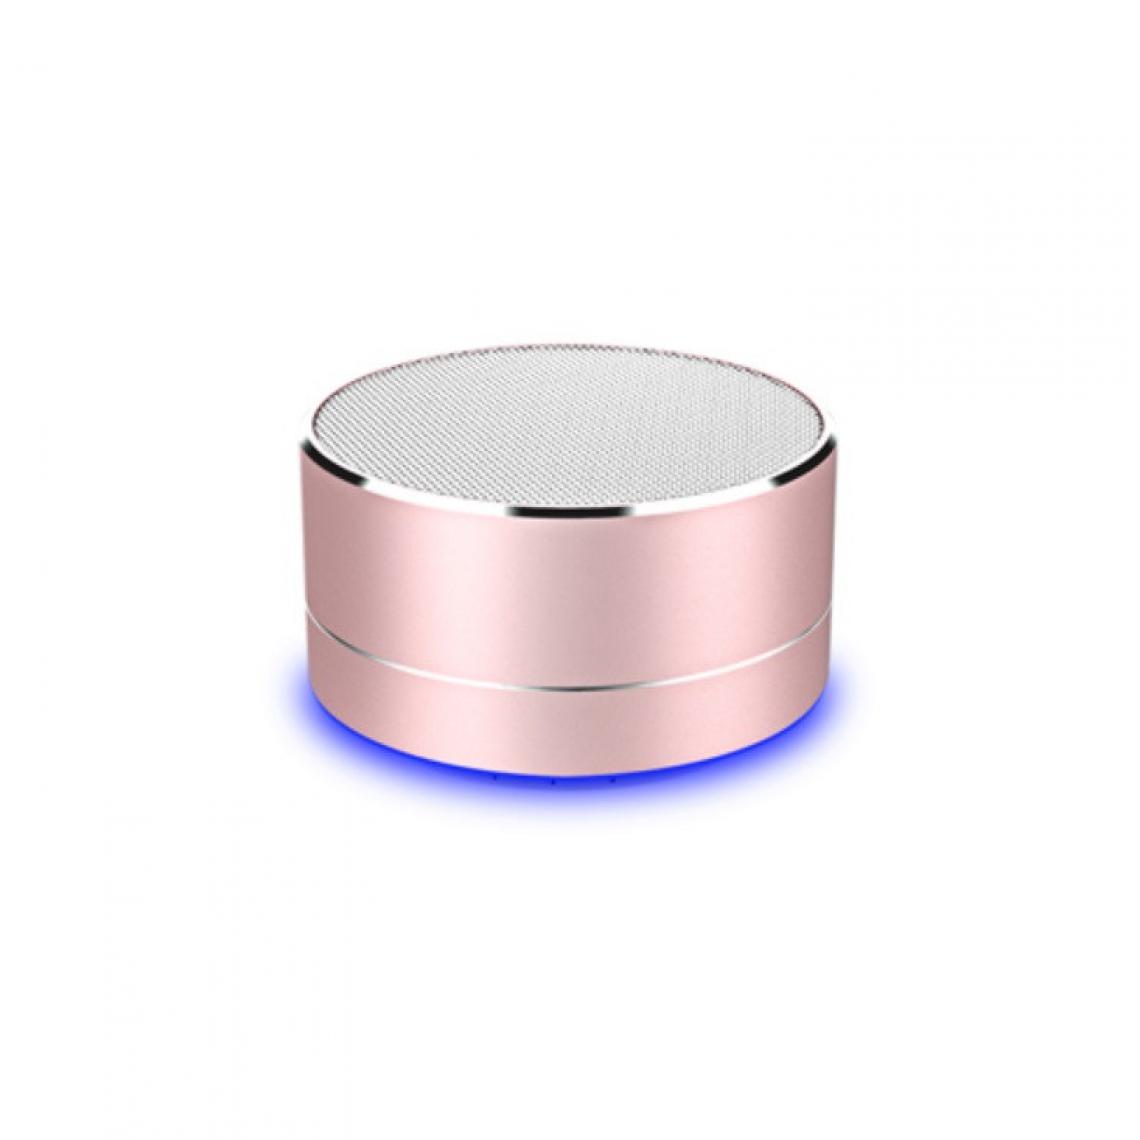 Shot - Enceinte Metal Bluetooth pour HUAWEI Mate 30 Pros Smartphone Port USB Carte TF Auxiliaire Haut-Parleur Micro Mini (ROSE) - Autres accessoires smartphone